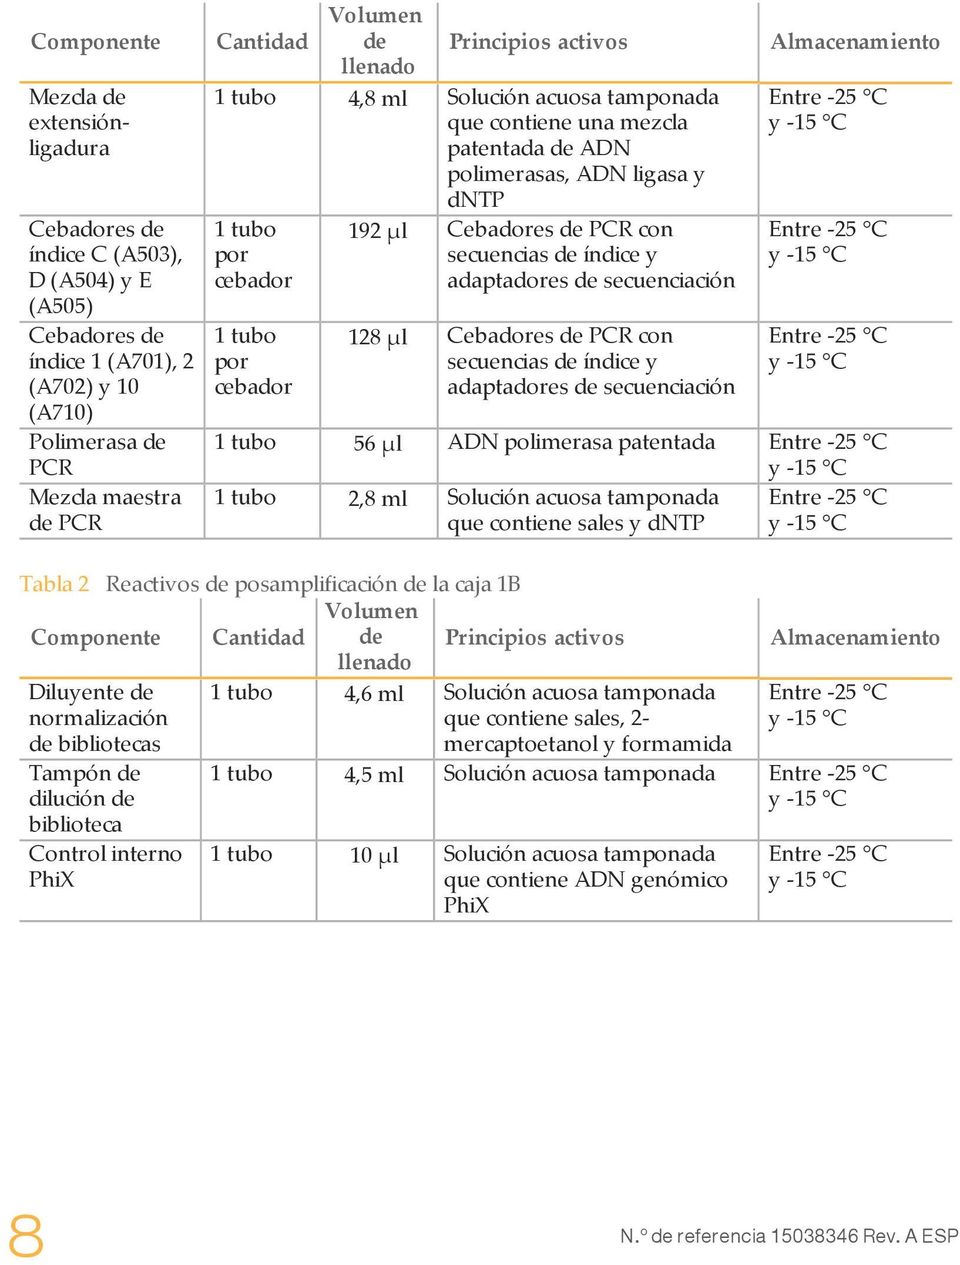 PCR con secuencias de índice y adaptadores de secuenciación 128 µl Cebadores de PCR con secuencias de índice y adaptadores de secuenciación Almacenamiento Entre -25 C y -15 C Entre -25 C y -15 C